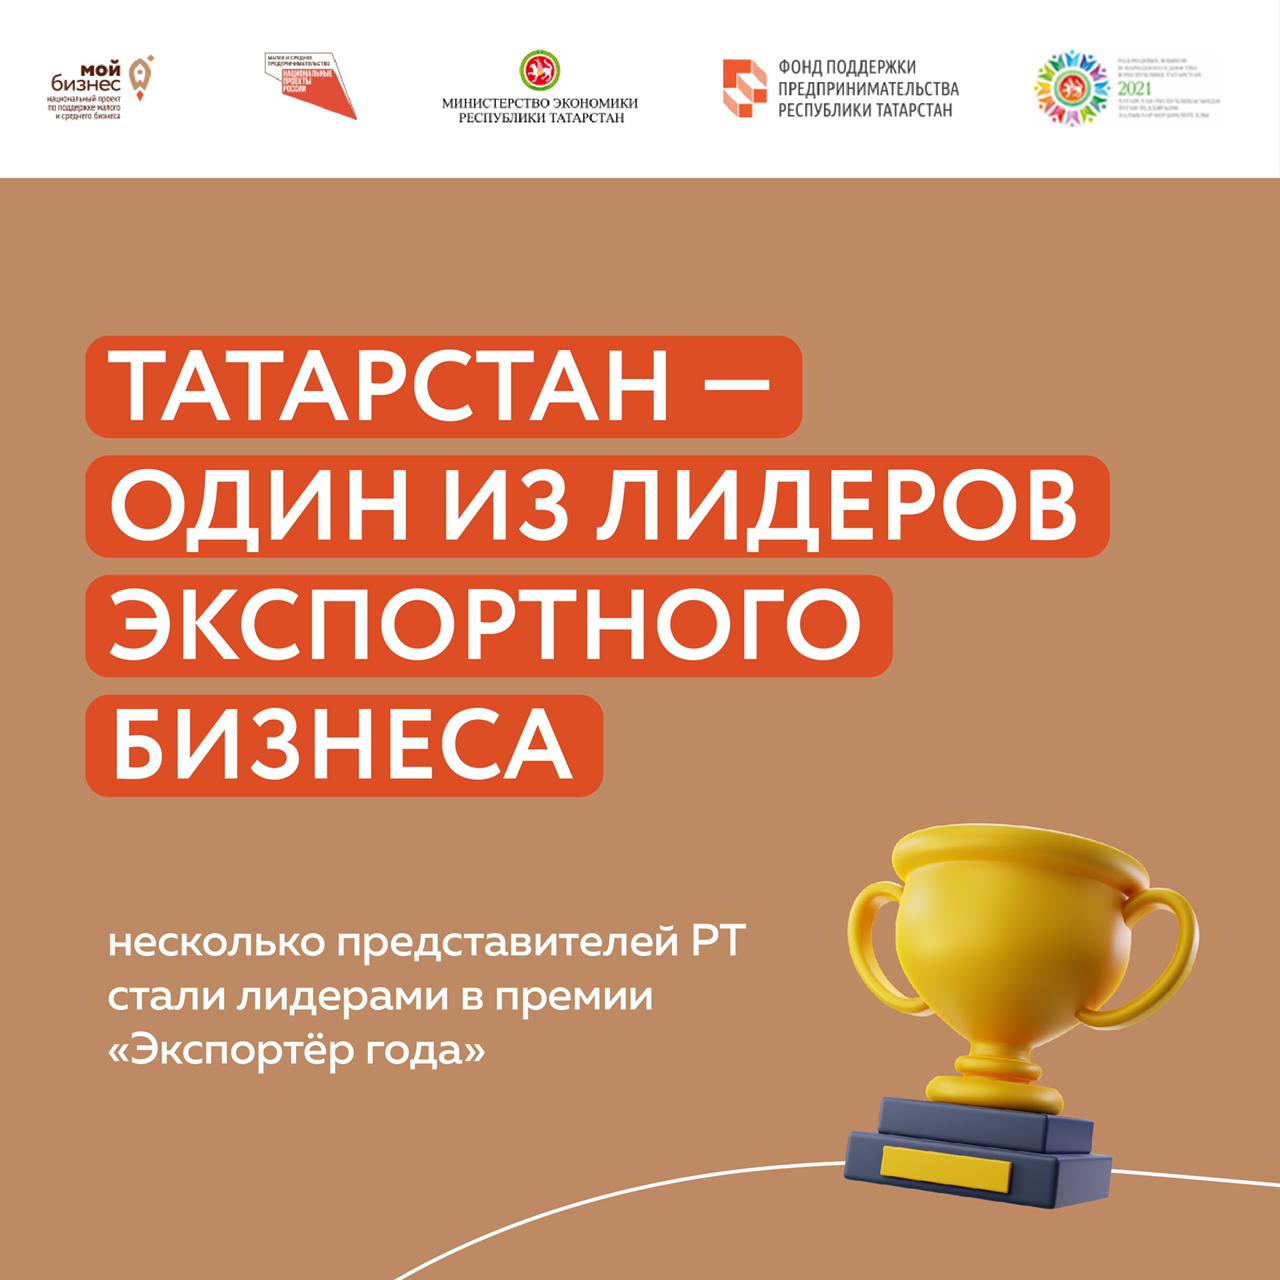 Татарстан стал одним из лидеров на всероссийской премии по экспорту